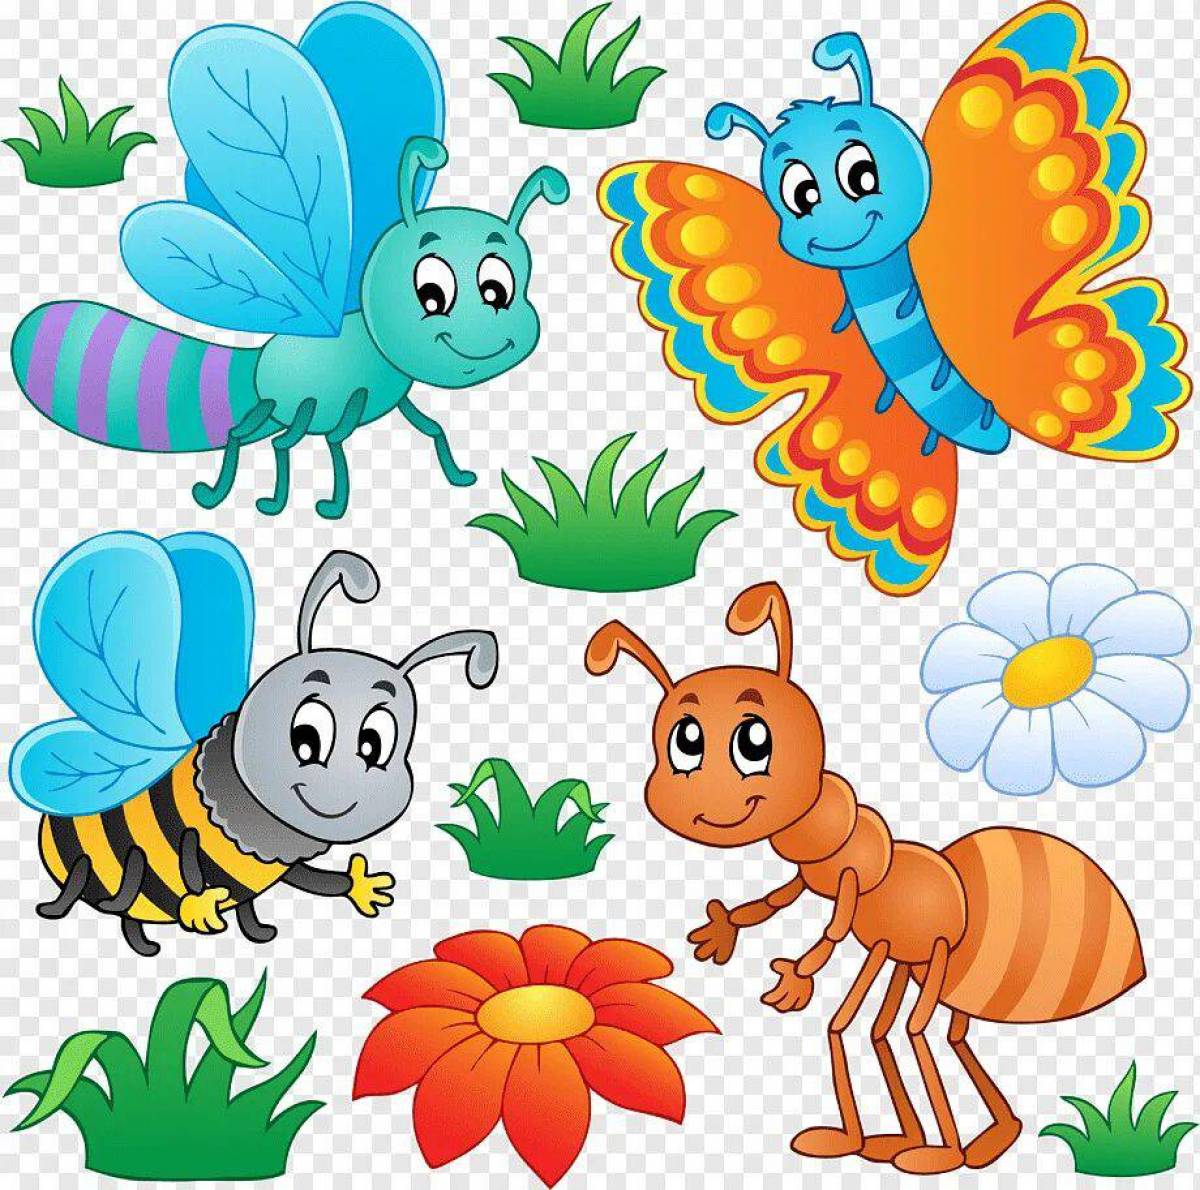 Картинки насекомых для детей цветные. Насекомые для детей. Насекомые картинки для детей. Насекомые для вырезания цветные. Мультяшные насекомые.